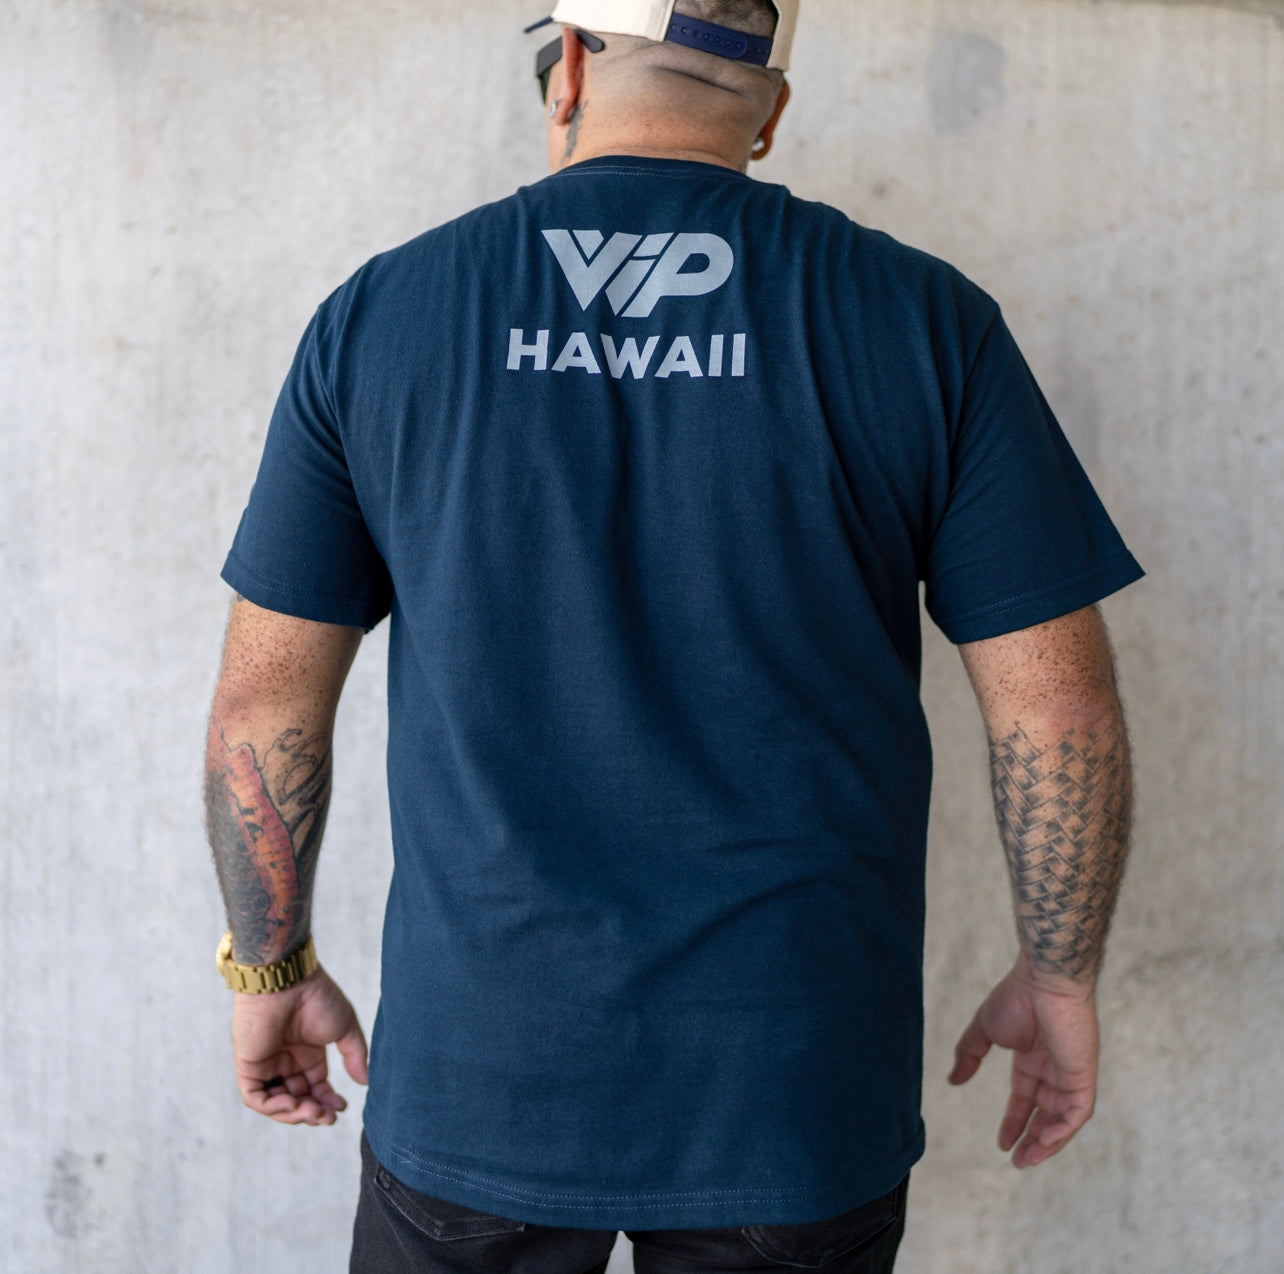 HAWAII NAVY BLUE T SHIRT